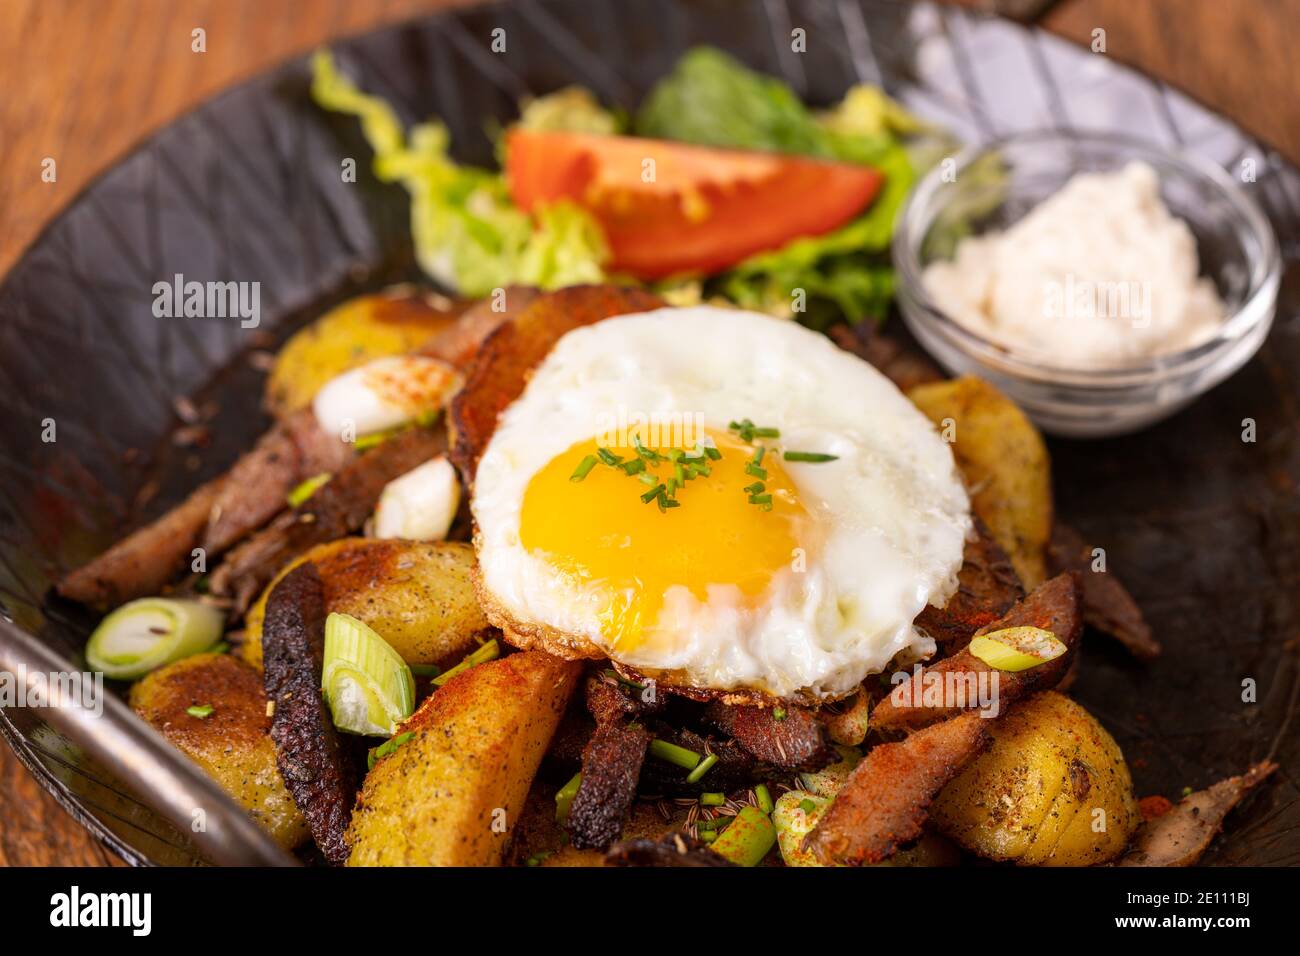 Kartoffel-Groestl Stockfotografie - Alamy